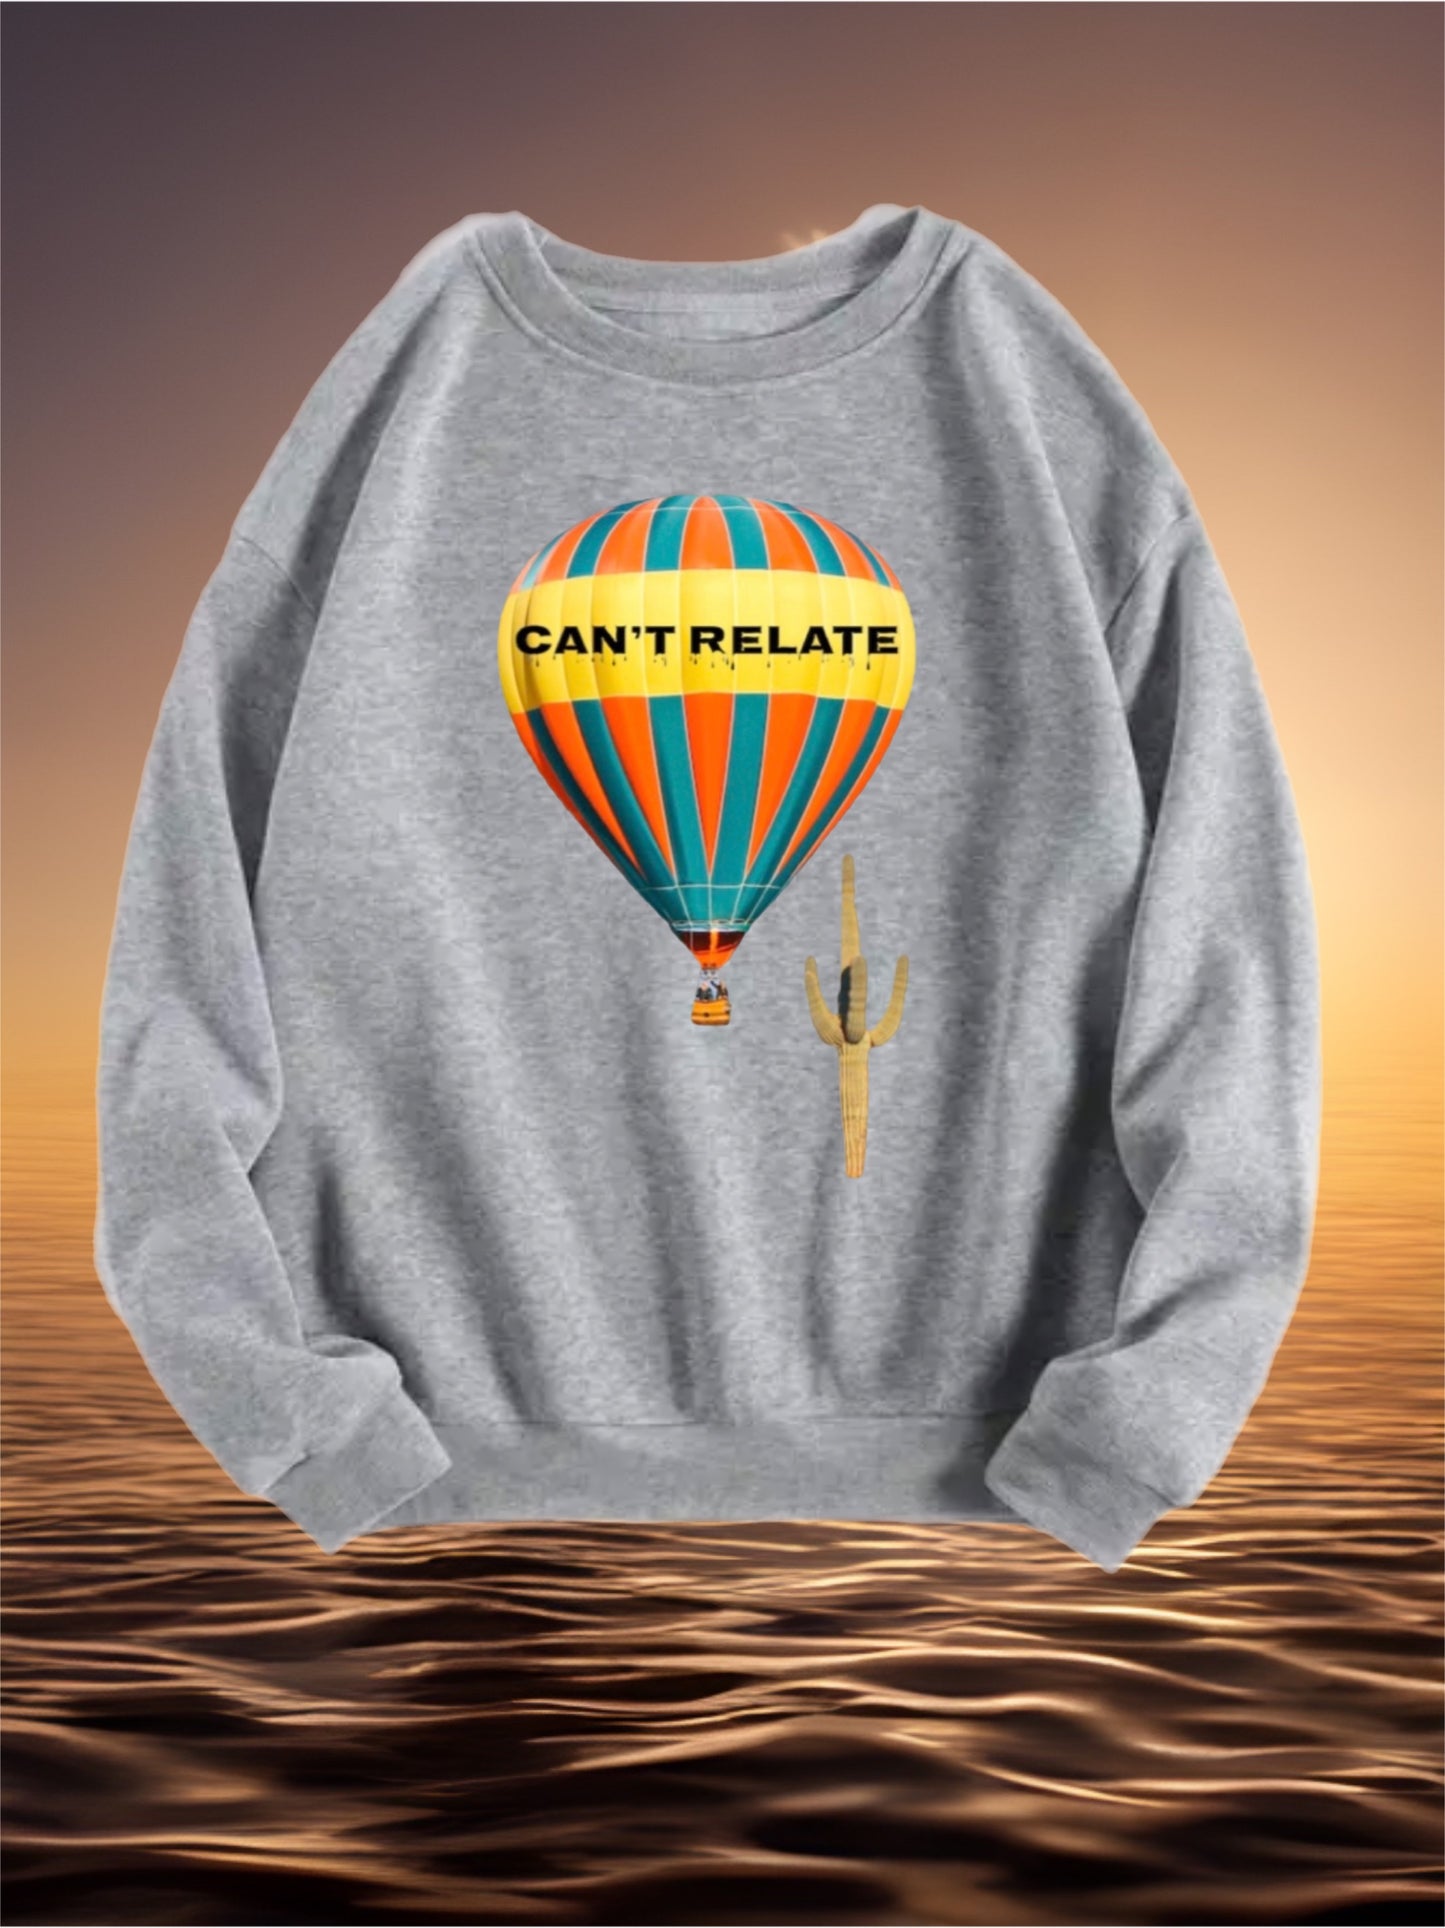 Hot air balloon sweatshirt